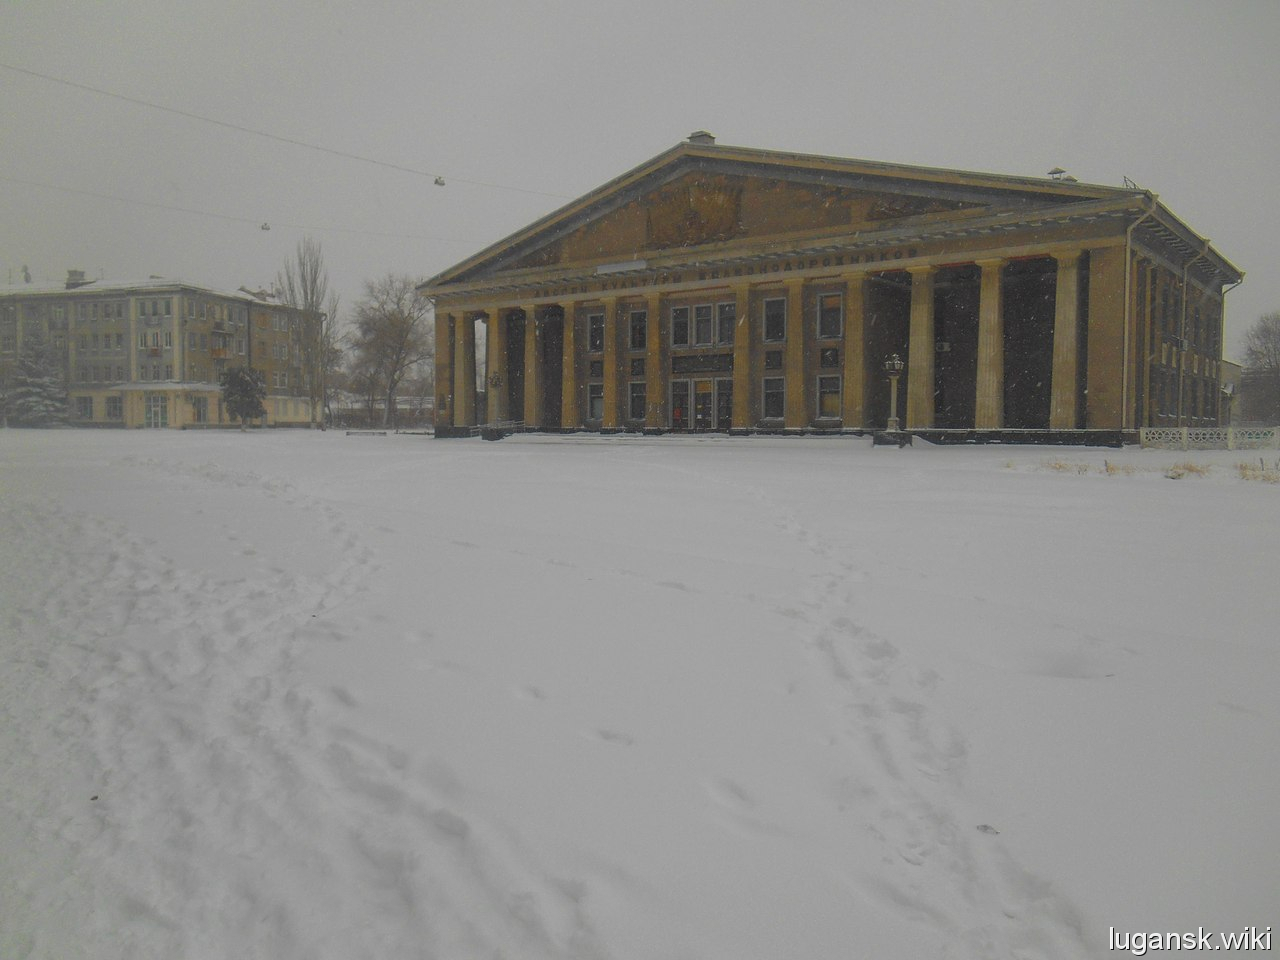 Луганск, 3 декабря 2014 год